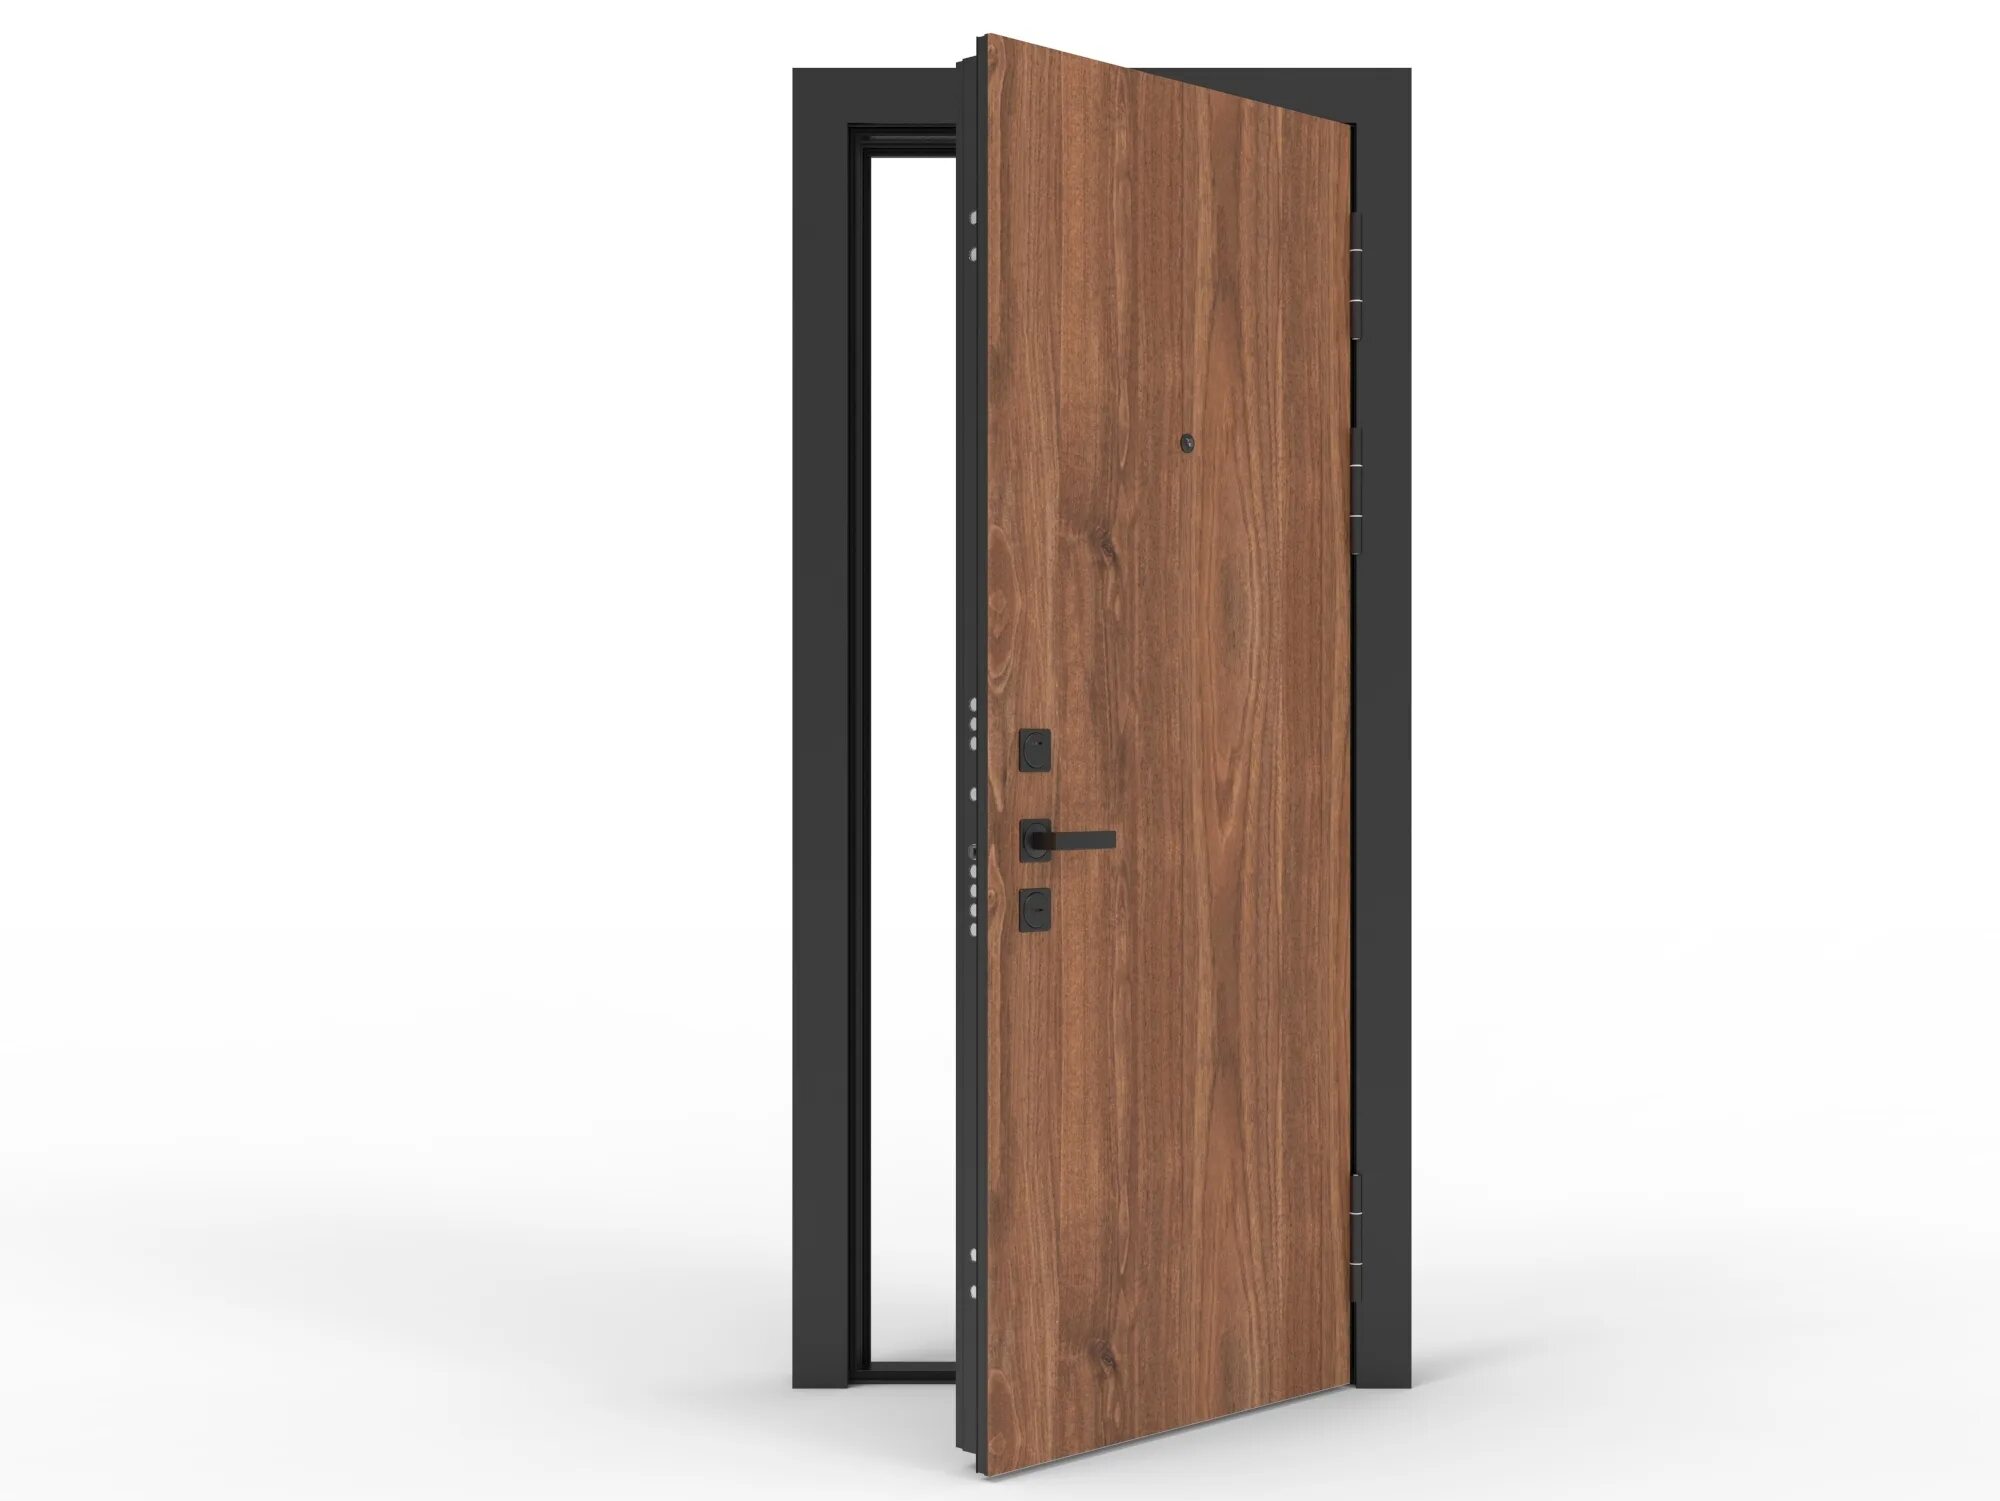 Flat door. Дверь p8 по. Современные двери в офис. Syntera p10/p15 / AMG -Double Wood d.12... Подхезд Двеерь.